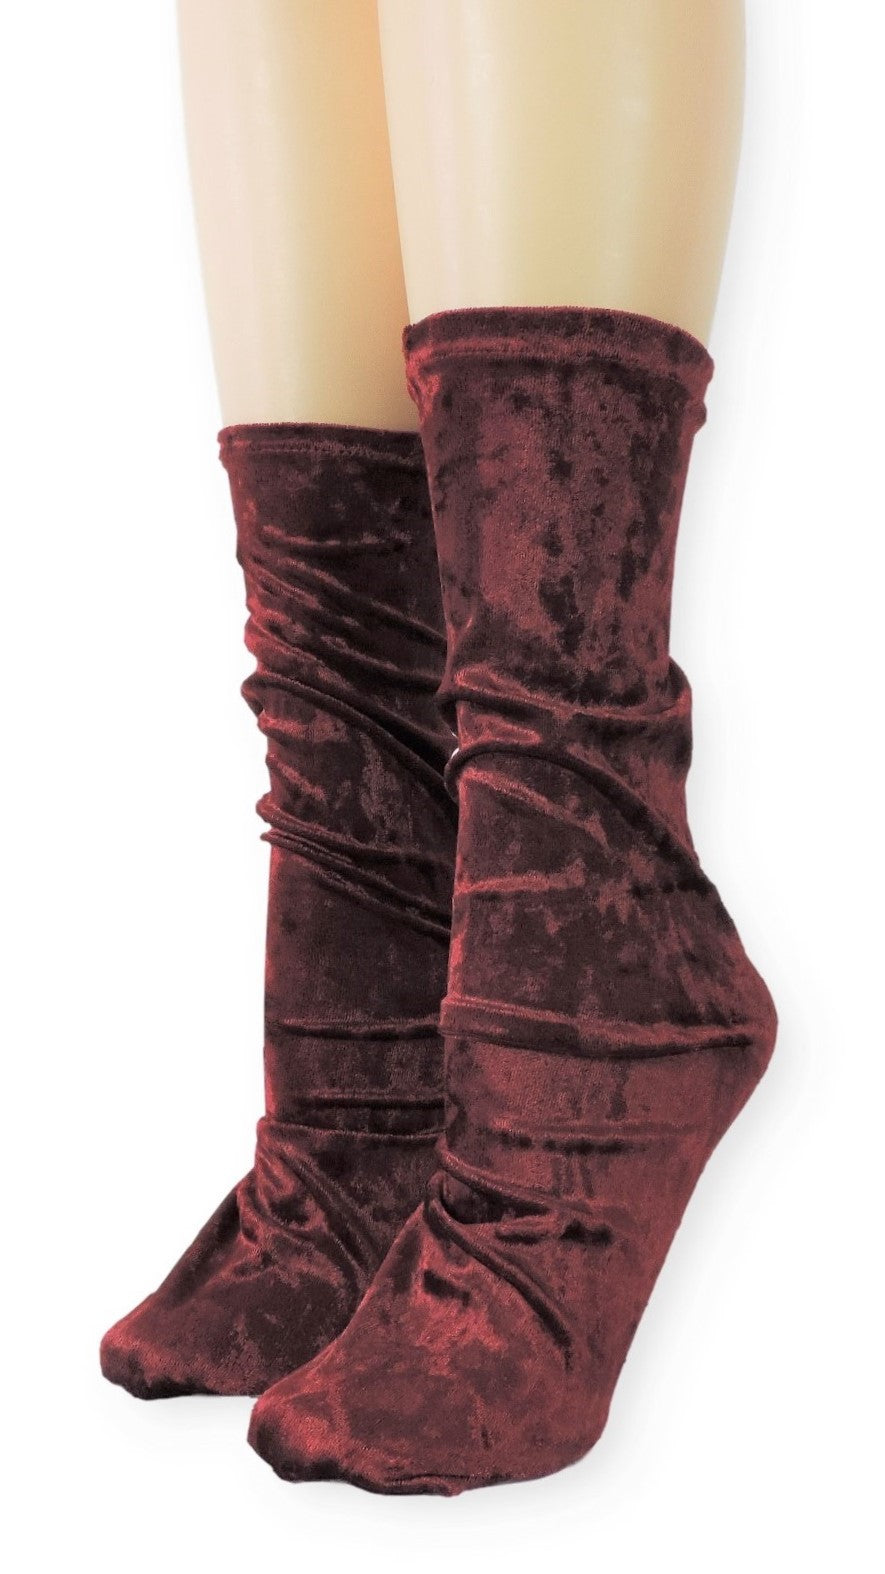 Maroon Crushed Velvet Socks - Global Trendz Fashion®